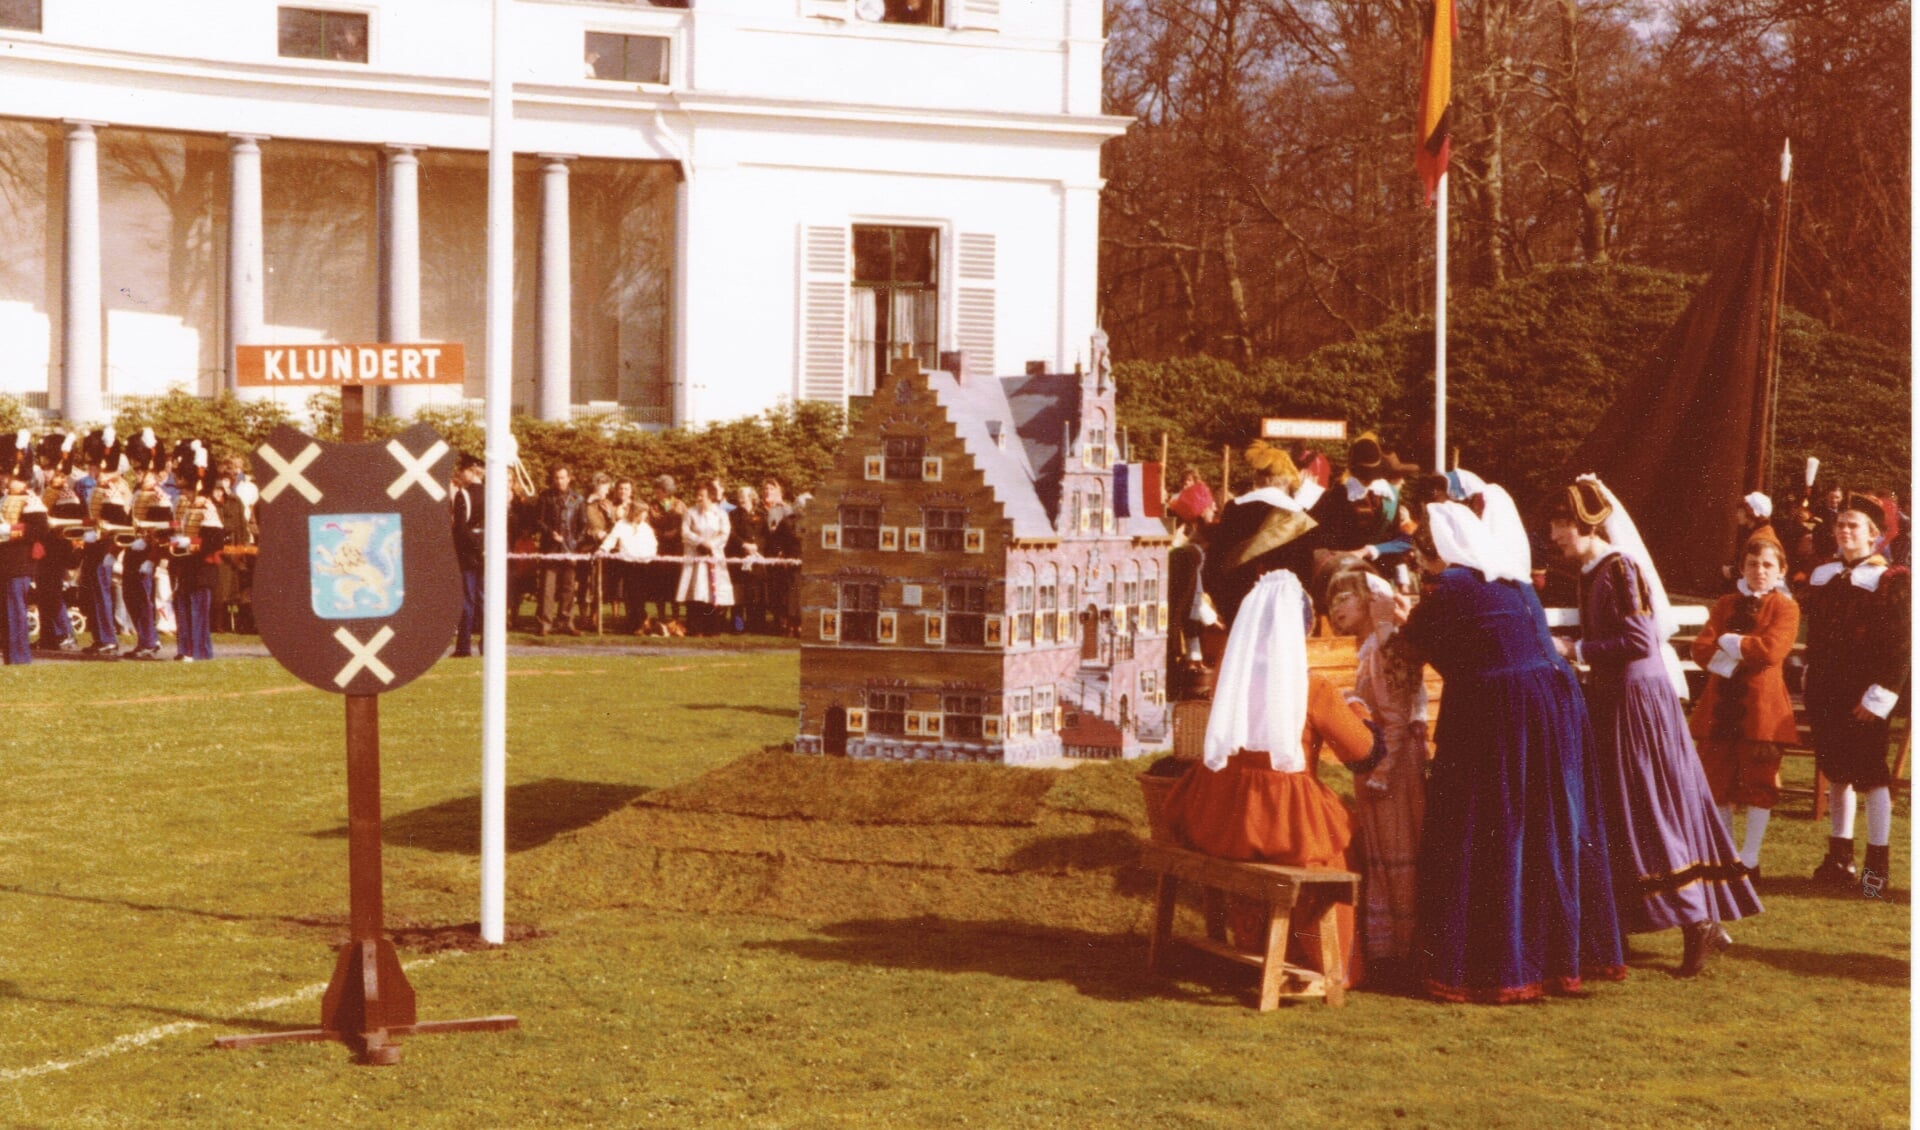 De Klundertse delegatie maakt zich klaar voor het defilé op Soestduik in 1979.